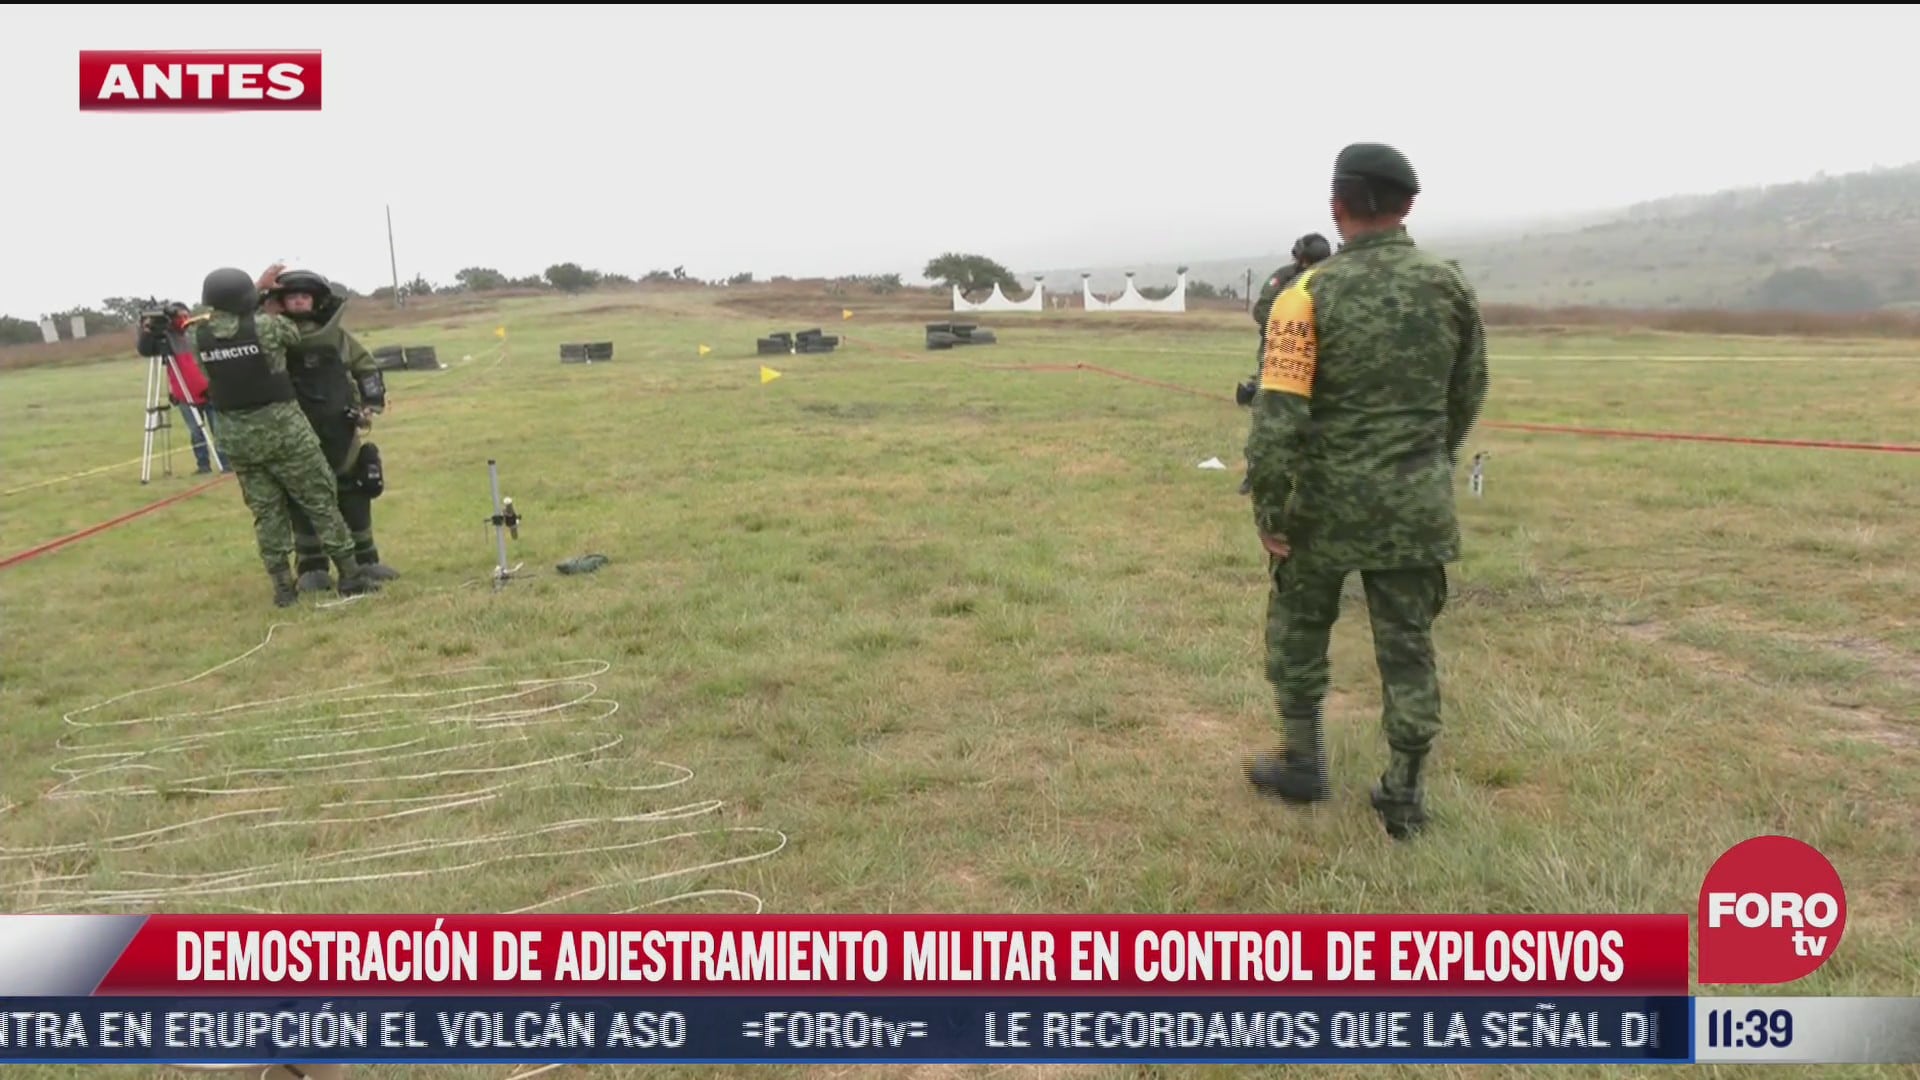 ejercito mexicano realiza demostracion de adiestramiento militar en control de explosivos